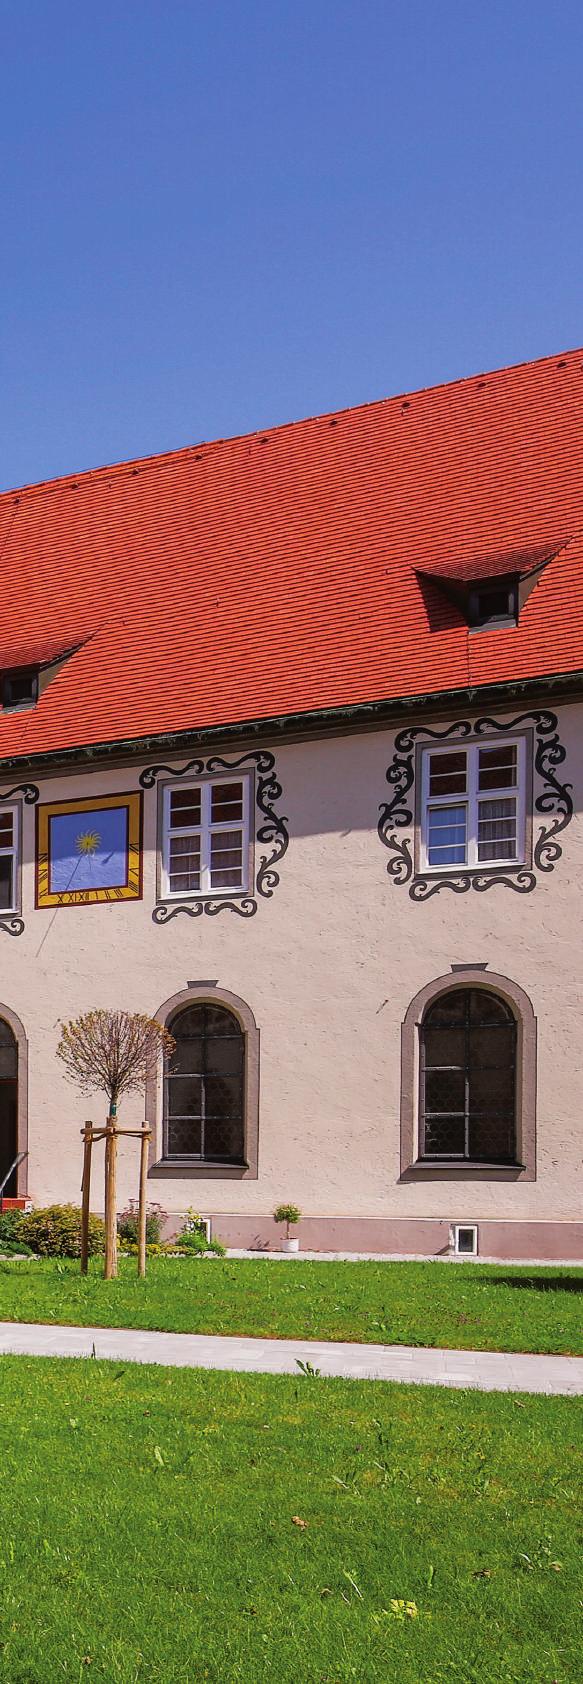 Herzlich Willkommen in der KurOase im Kloster... Ihr Tagungshotel liegt im Herzen der Kneippstadt Bad Wörishofen, eingebettet in eine herrliche Landschaft.